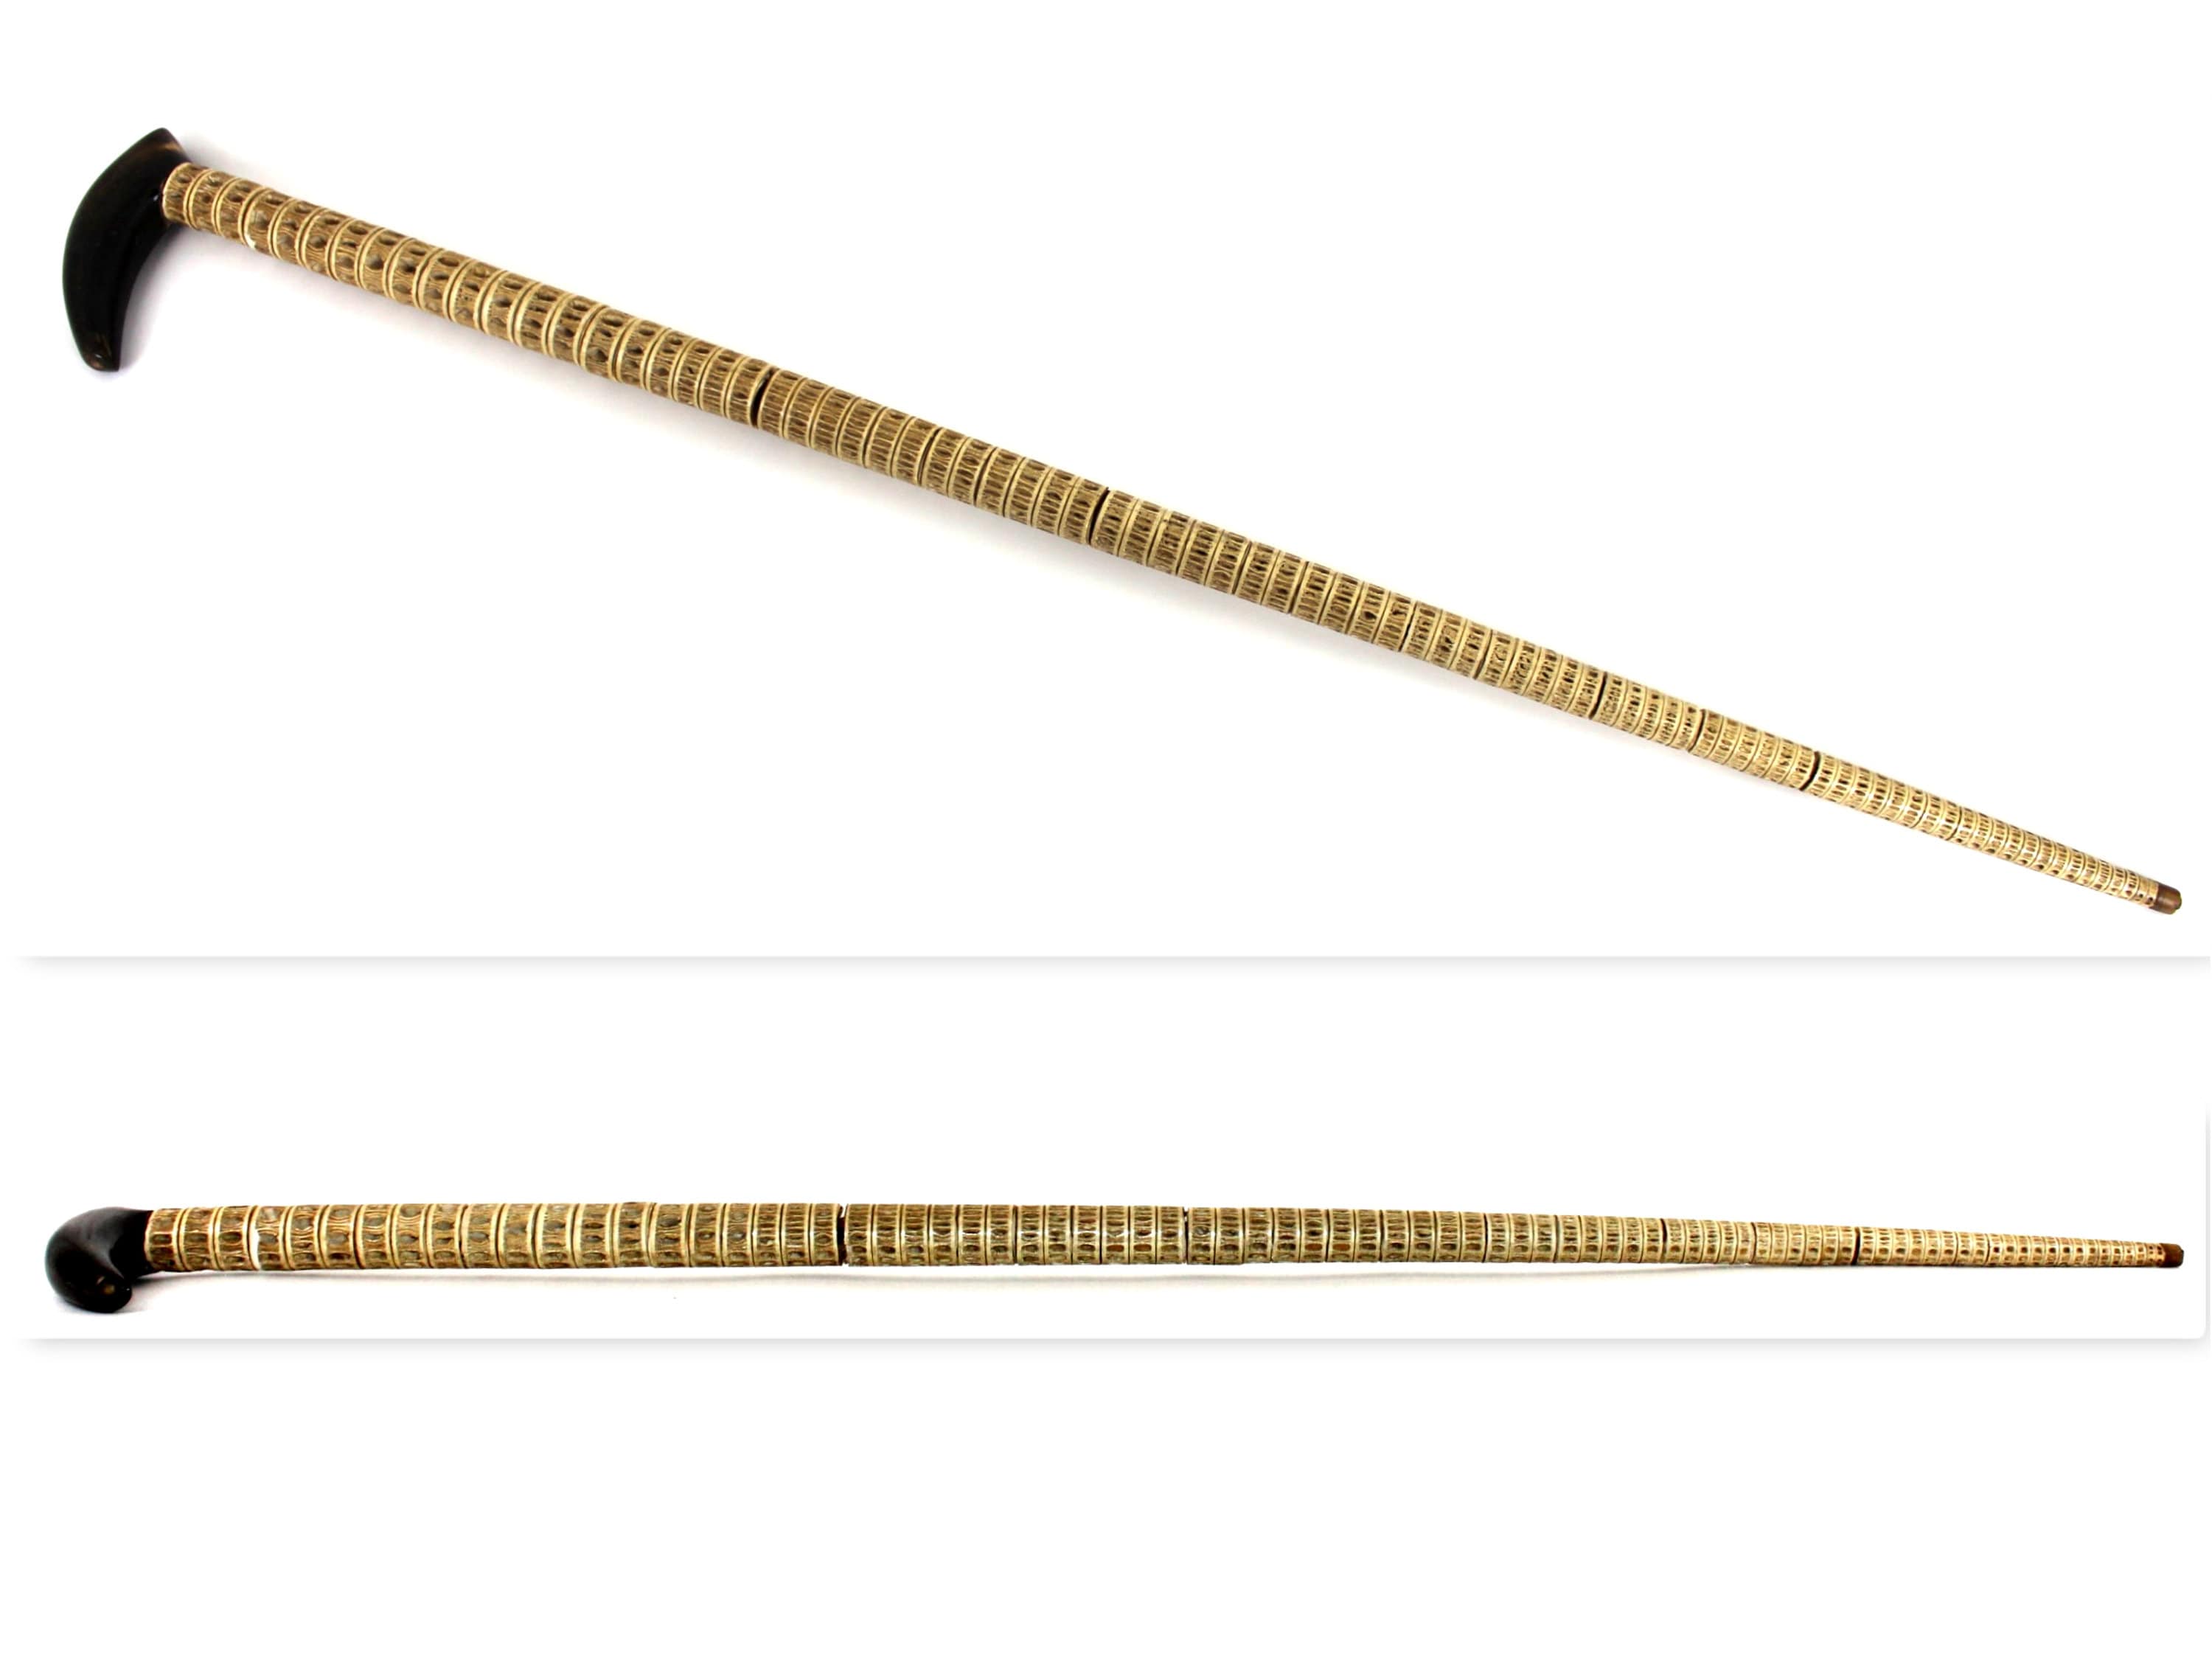 Lot - Four turn-of-the-century men's walking sticks: shark spine